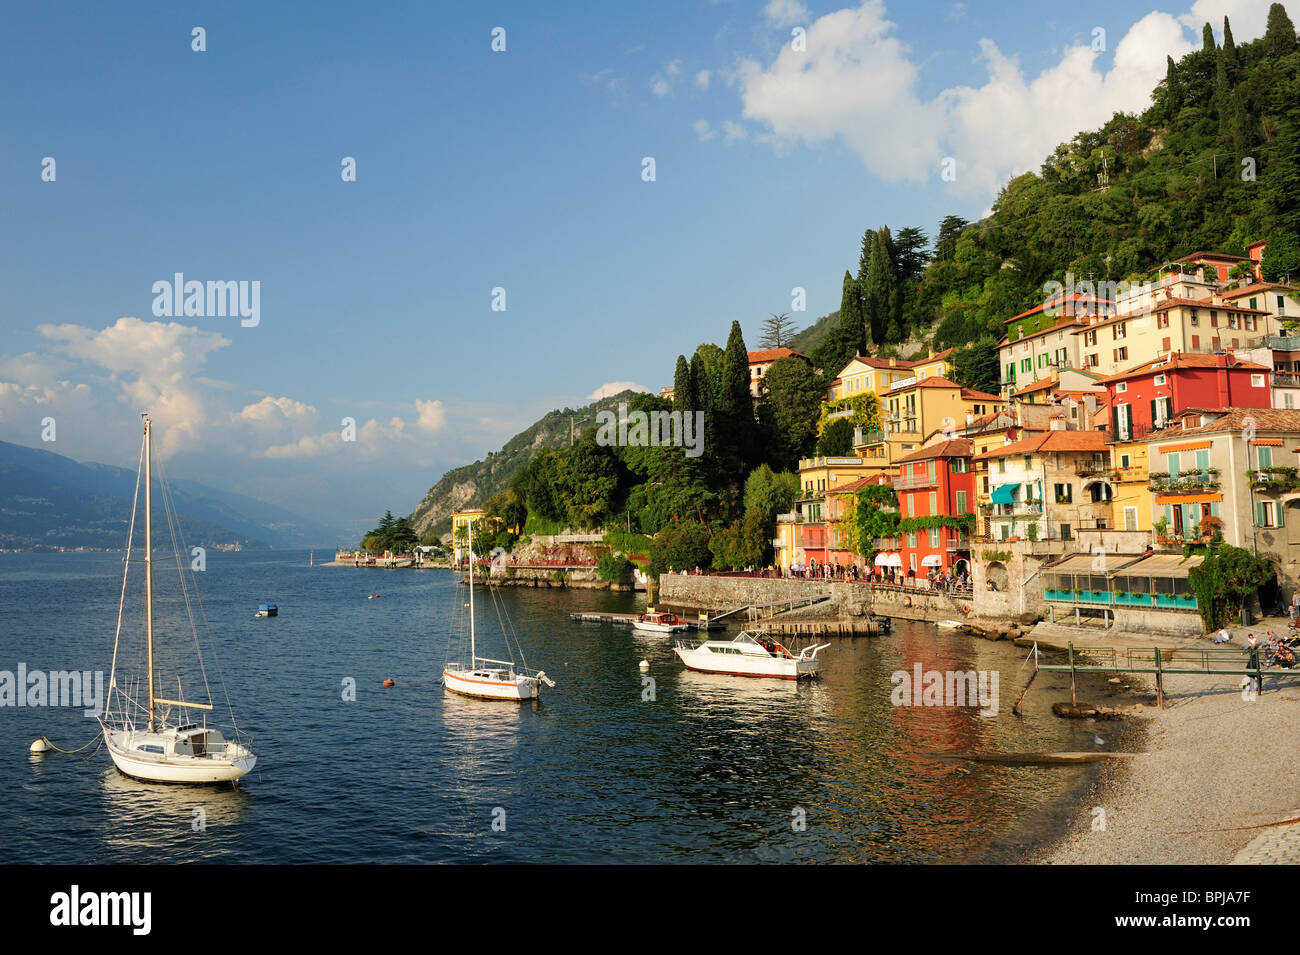 Boats on Lake Como, Varenna, Lombardy, Italy Stock Photo